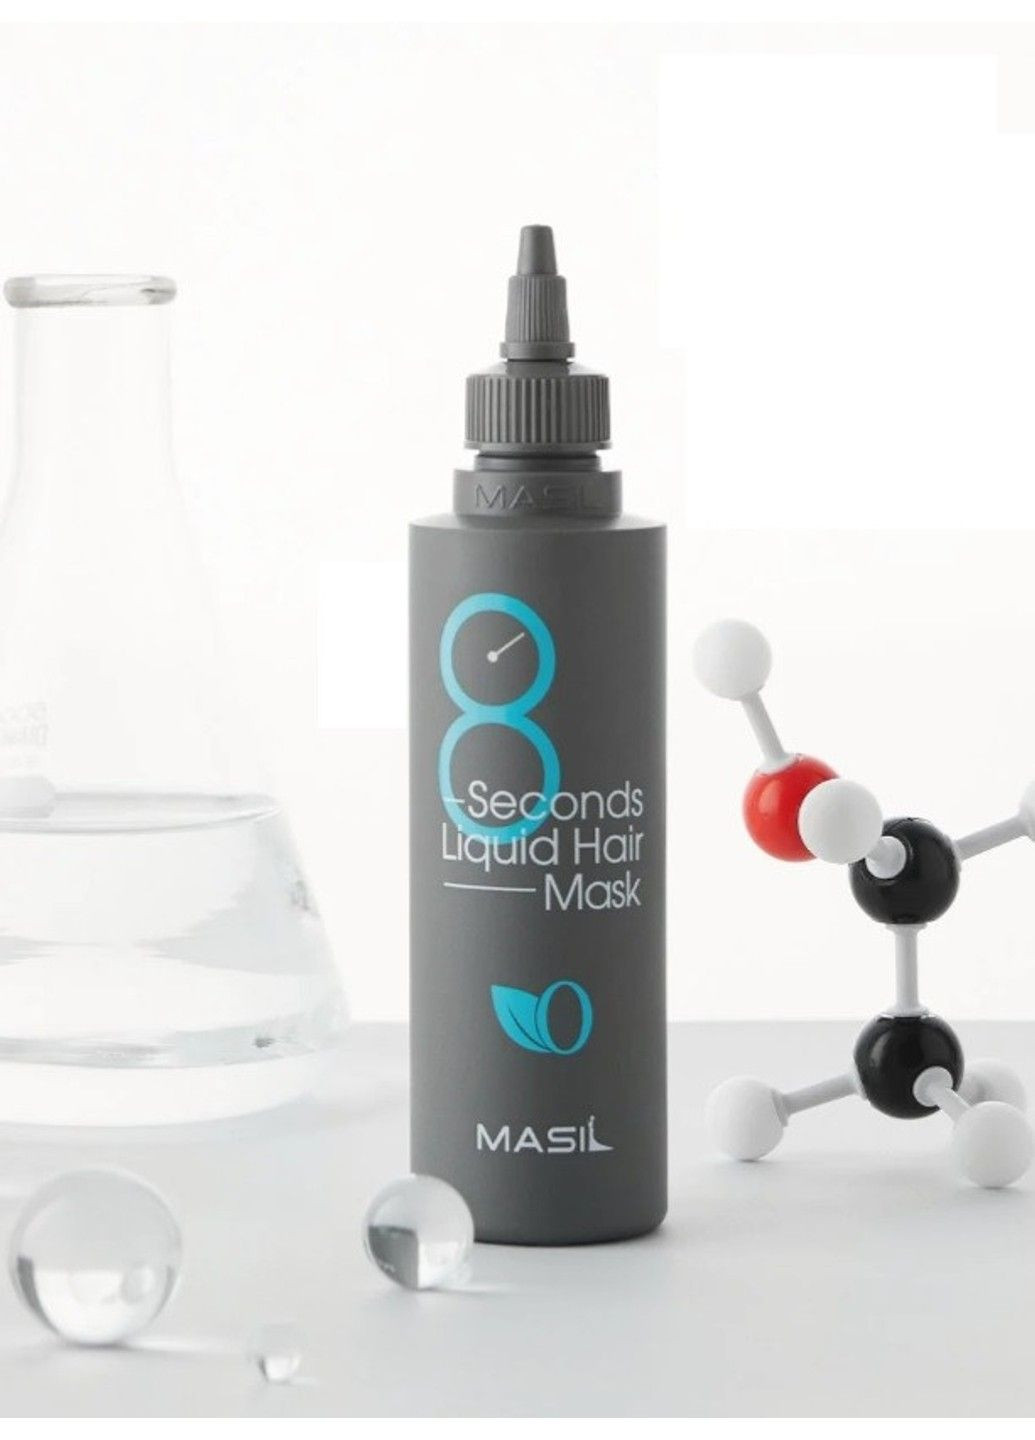 Маска для волос 8 Seconds Liquid Hair Mask восстановления и объем - 100 мл MASIL (285813569)